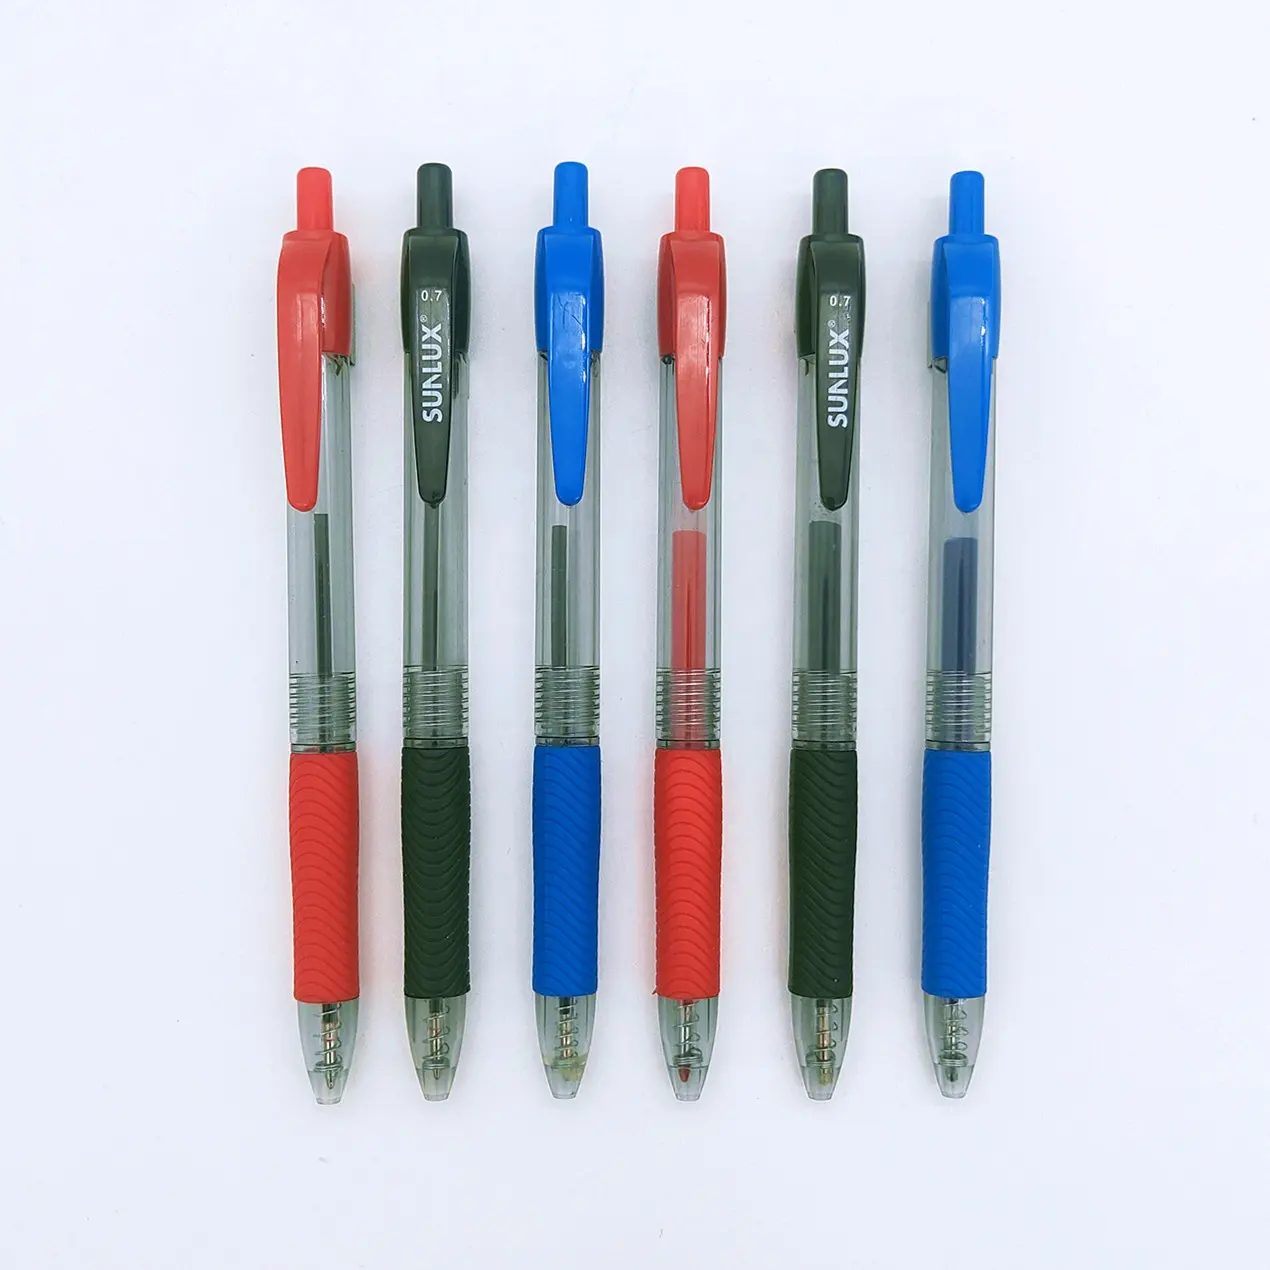 사용자 정의 로고 볼펜으로 대량 컬러 프로모션 개인 라벨 펜 zhejiang 젤 잉크 인쇄 클립 클릭 볼펜